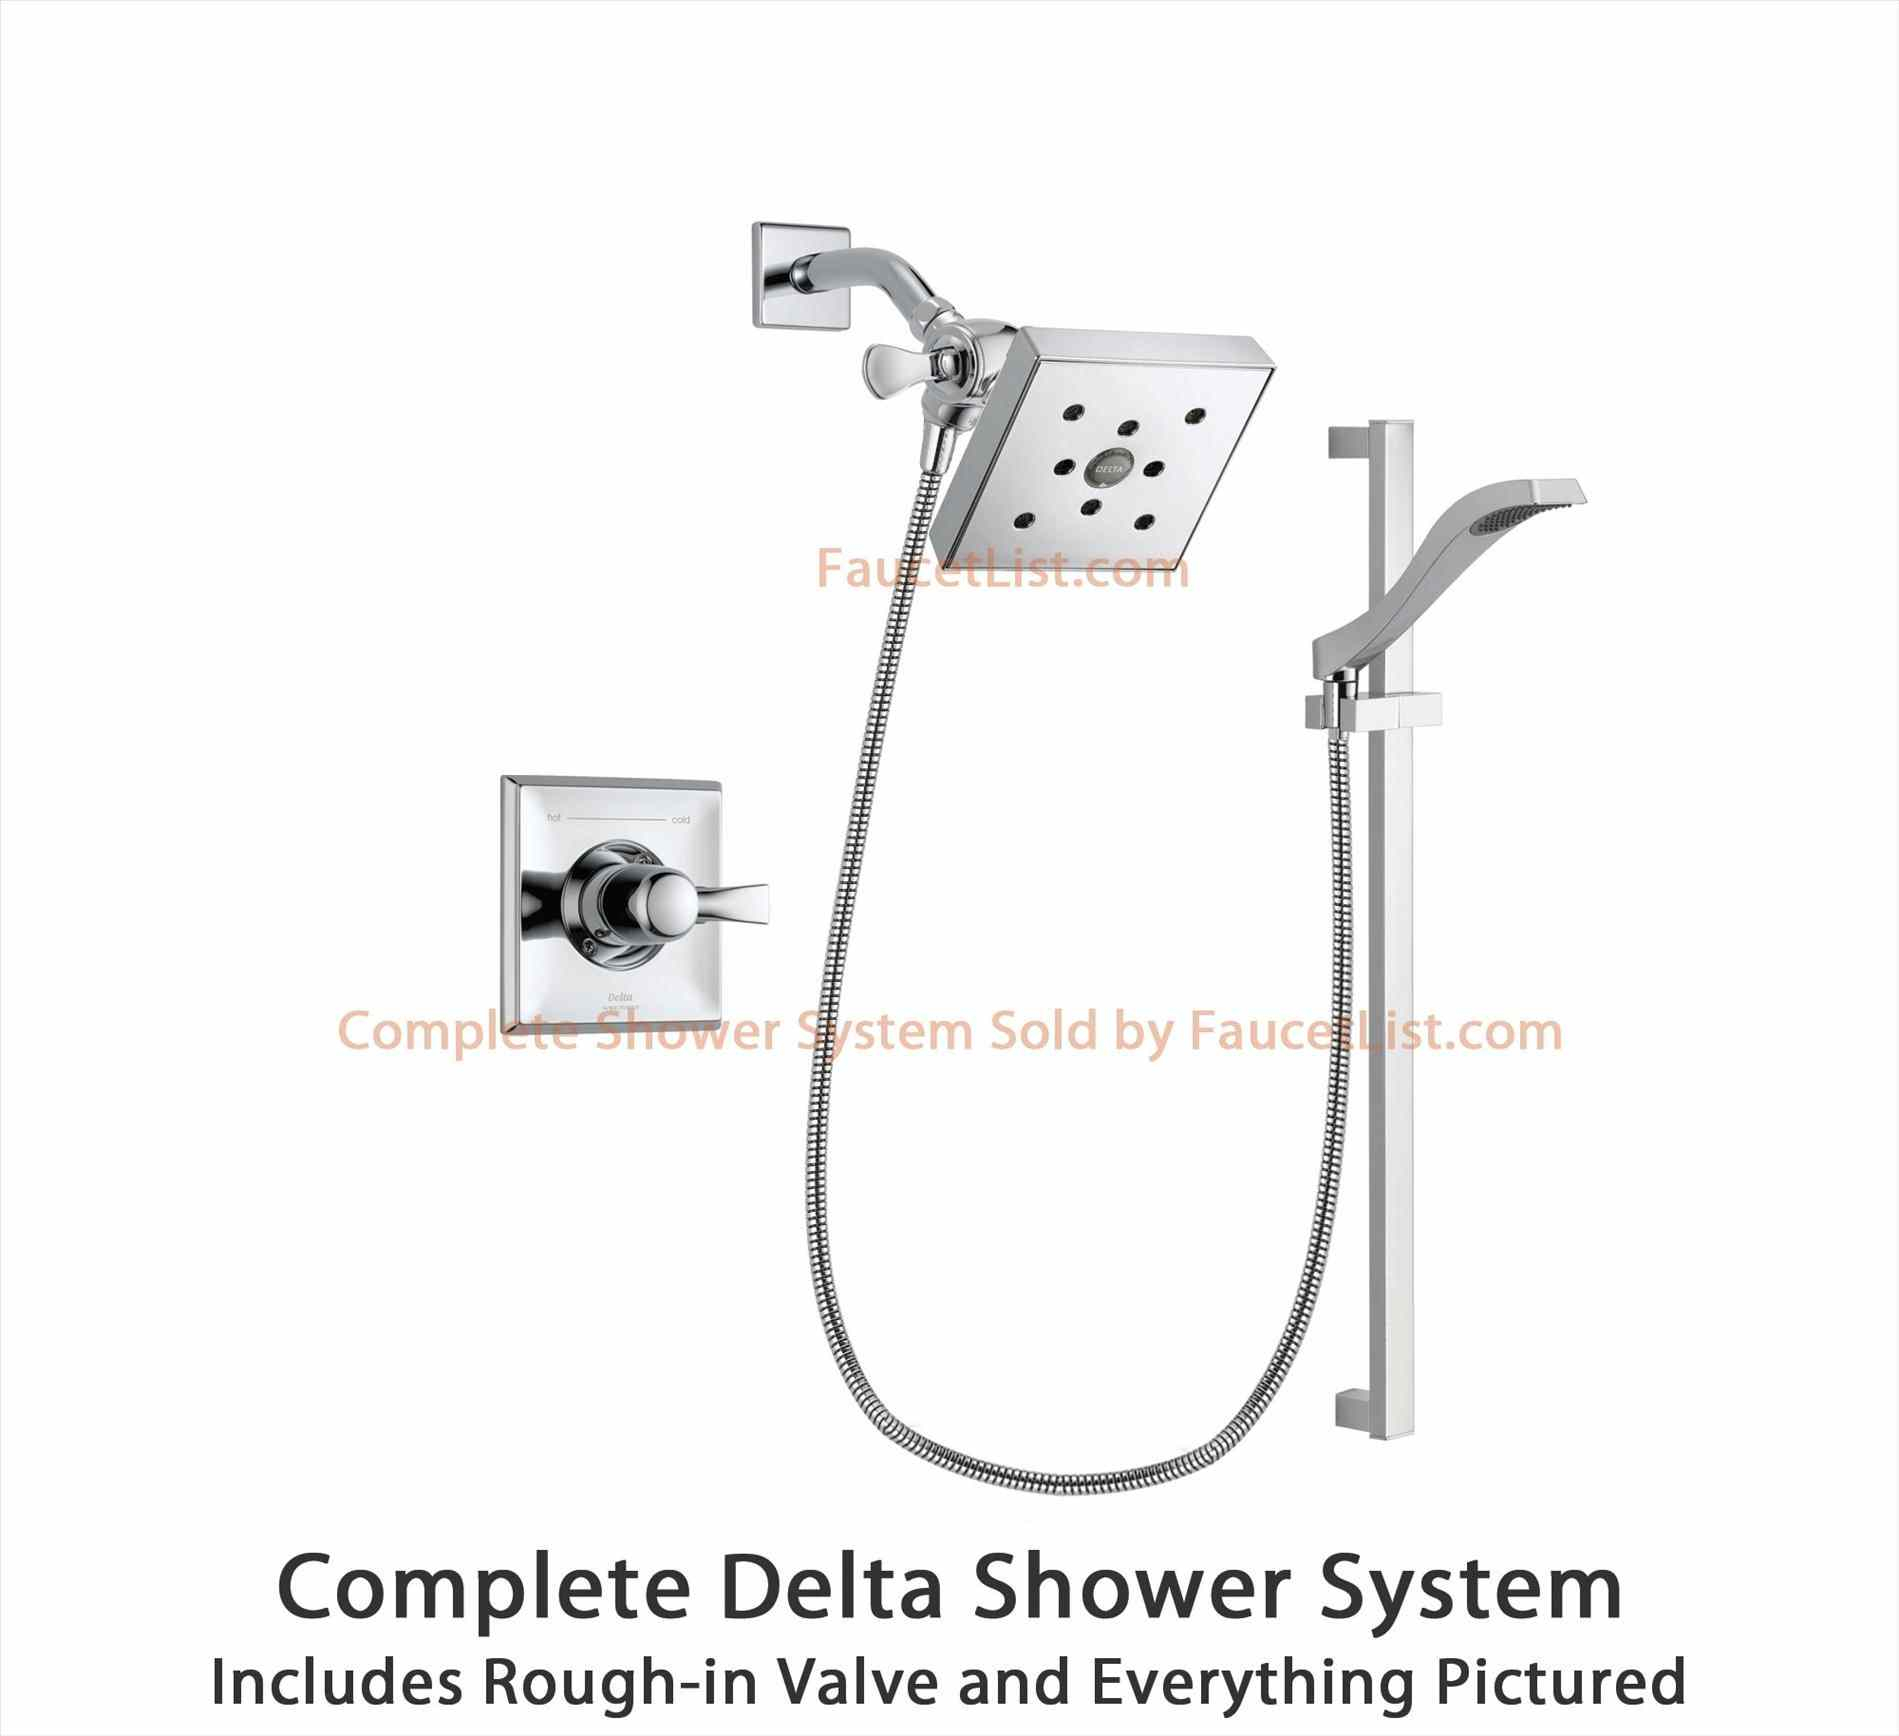 Shower Faucet Diagram Delta Bathroom Faucet Diagram 3 Handle Tub And Shower Faucet